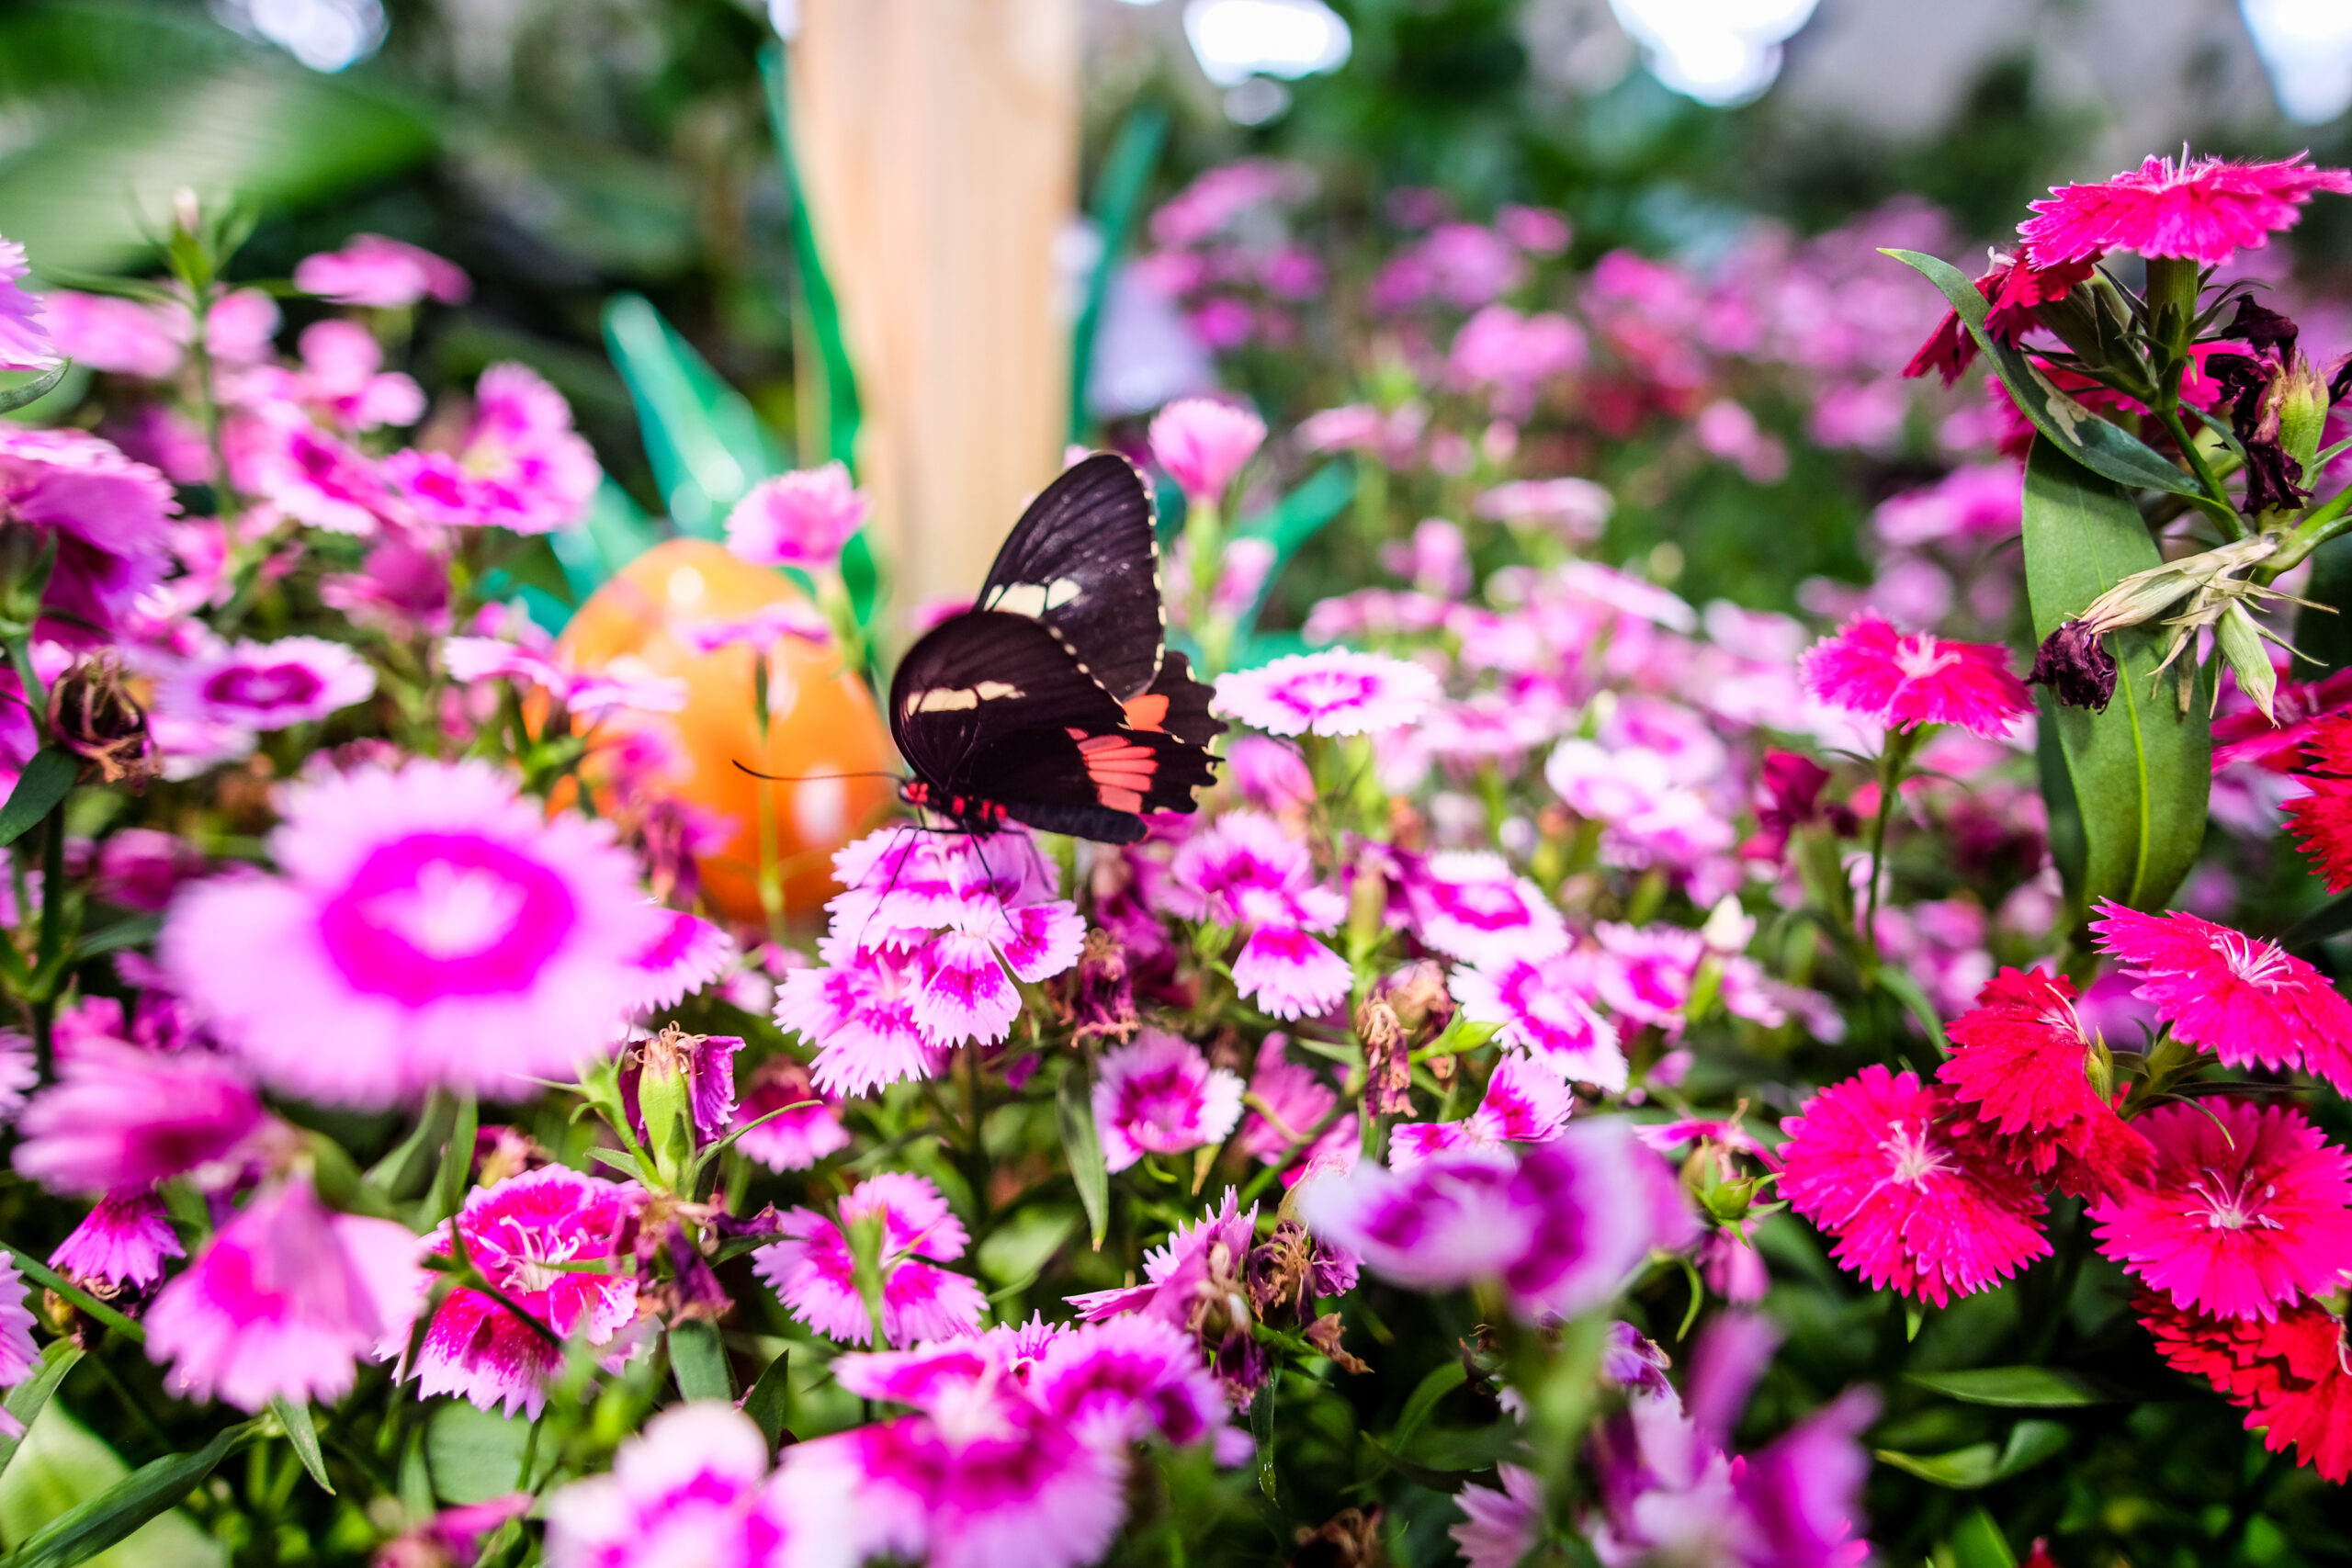 Dubai Butterfly Garden - Longwing butterfly